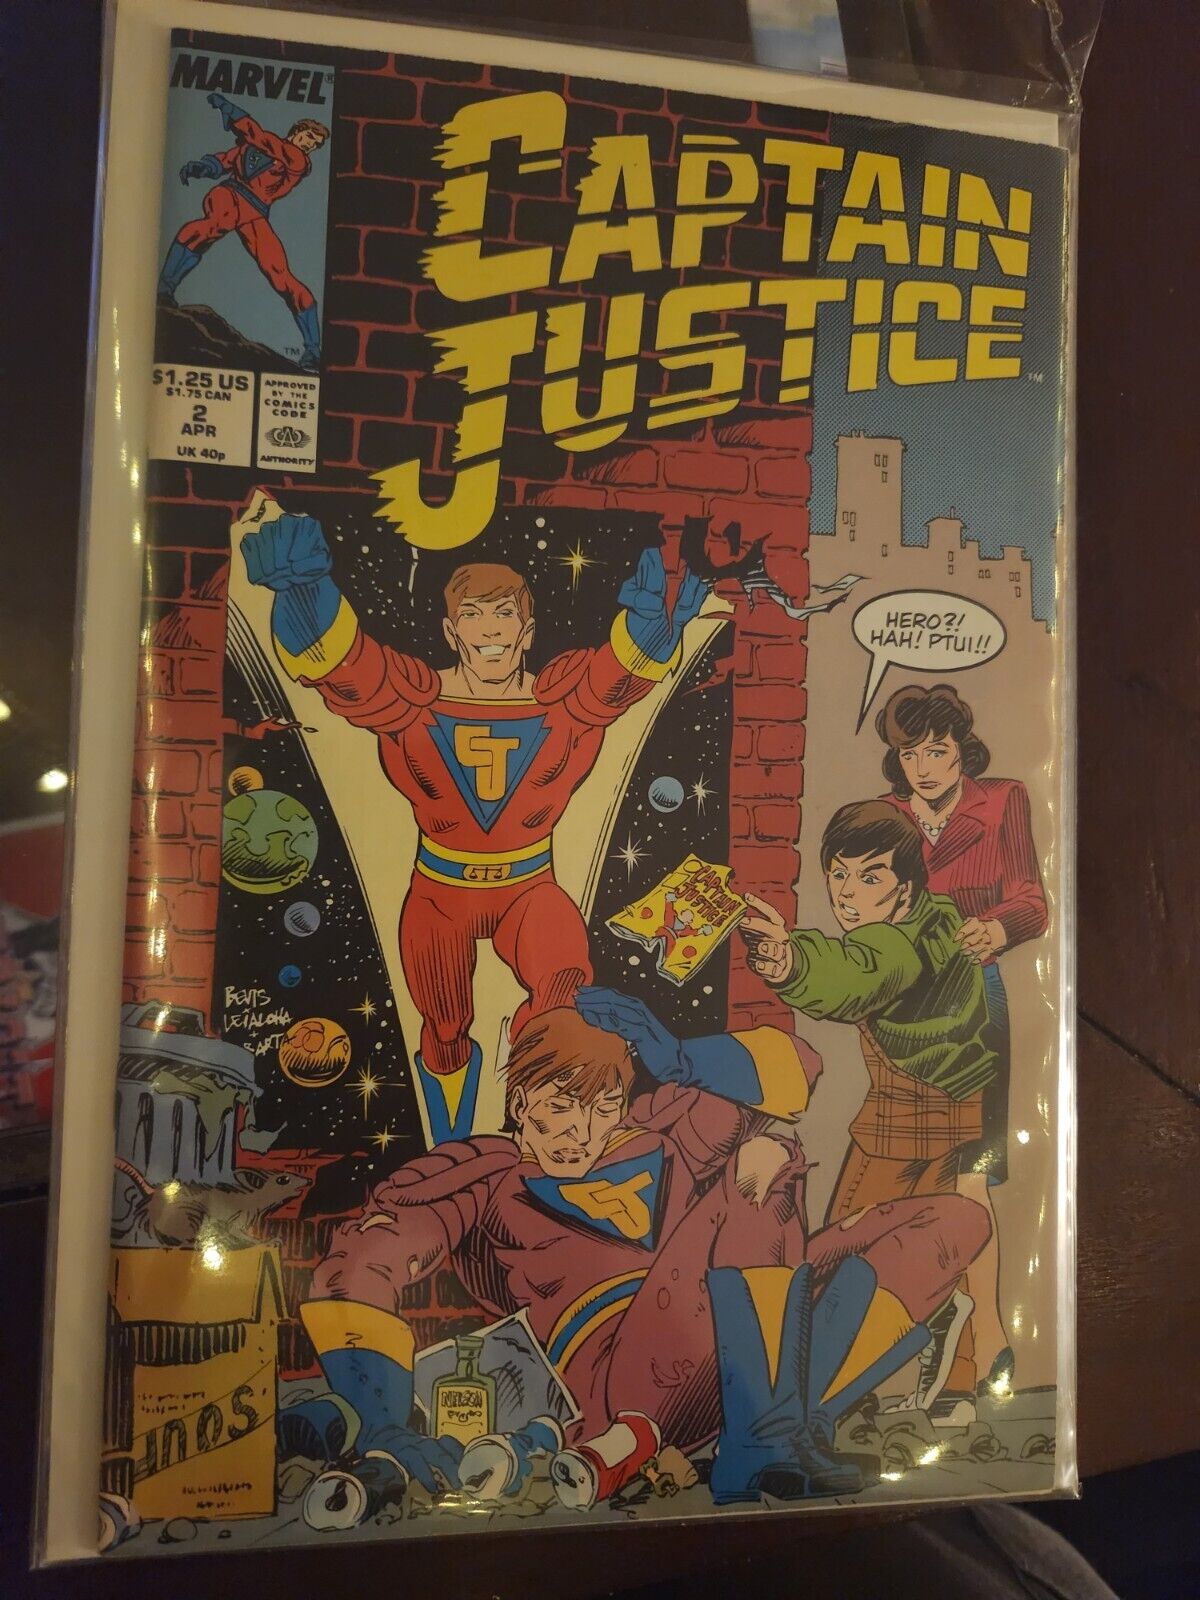 Captain Justice #2 MARVEL COMIC BOOK 8.5 AVG V36-22